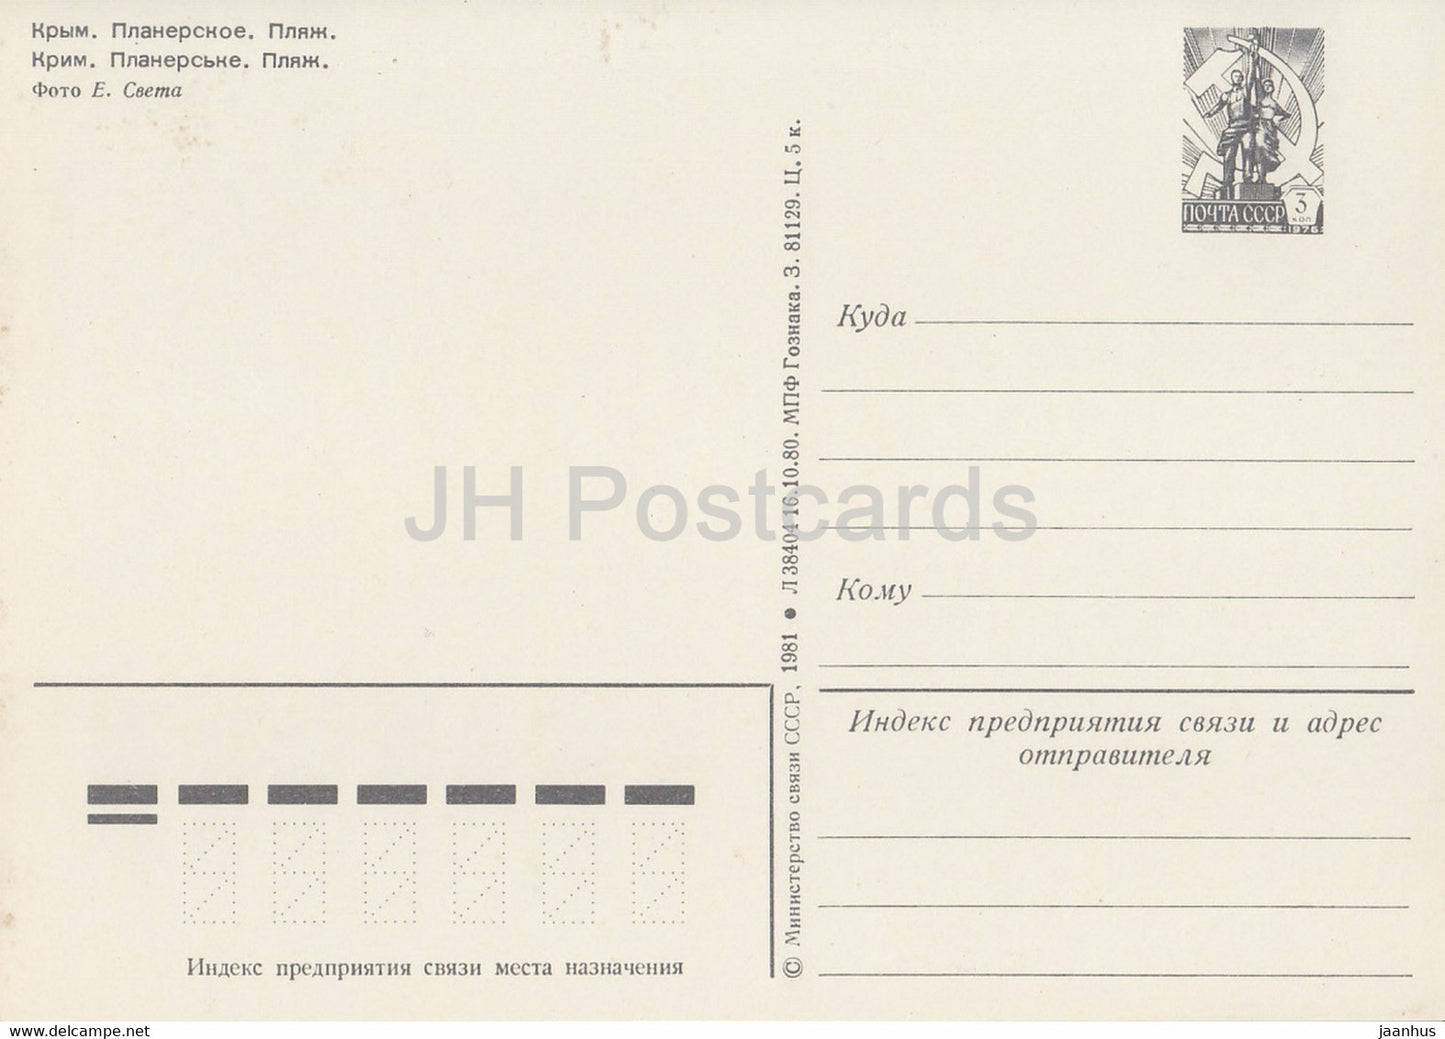 Crimea - Planerskoe beach - postal stationery - 1981 - Ukraine USSR - unused